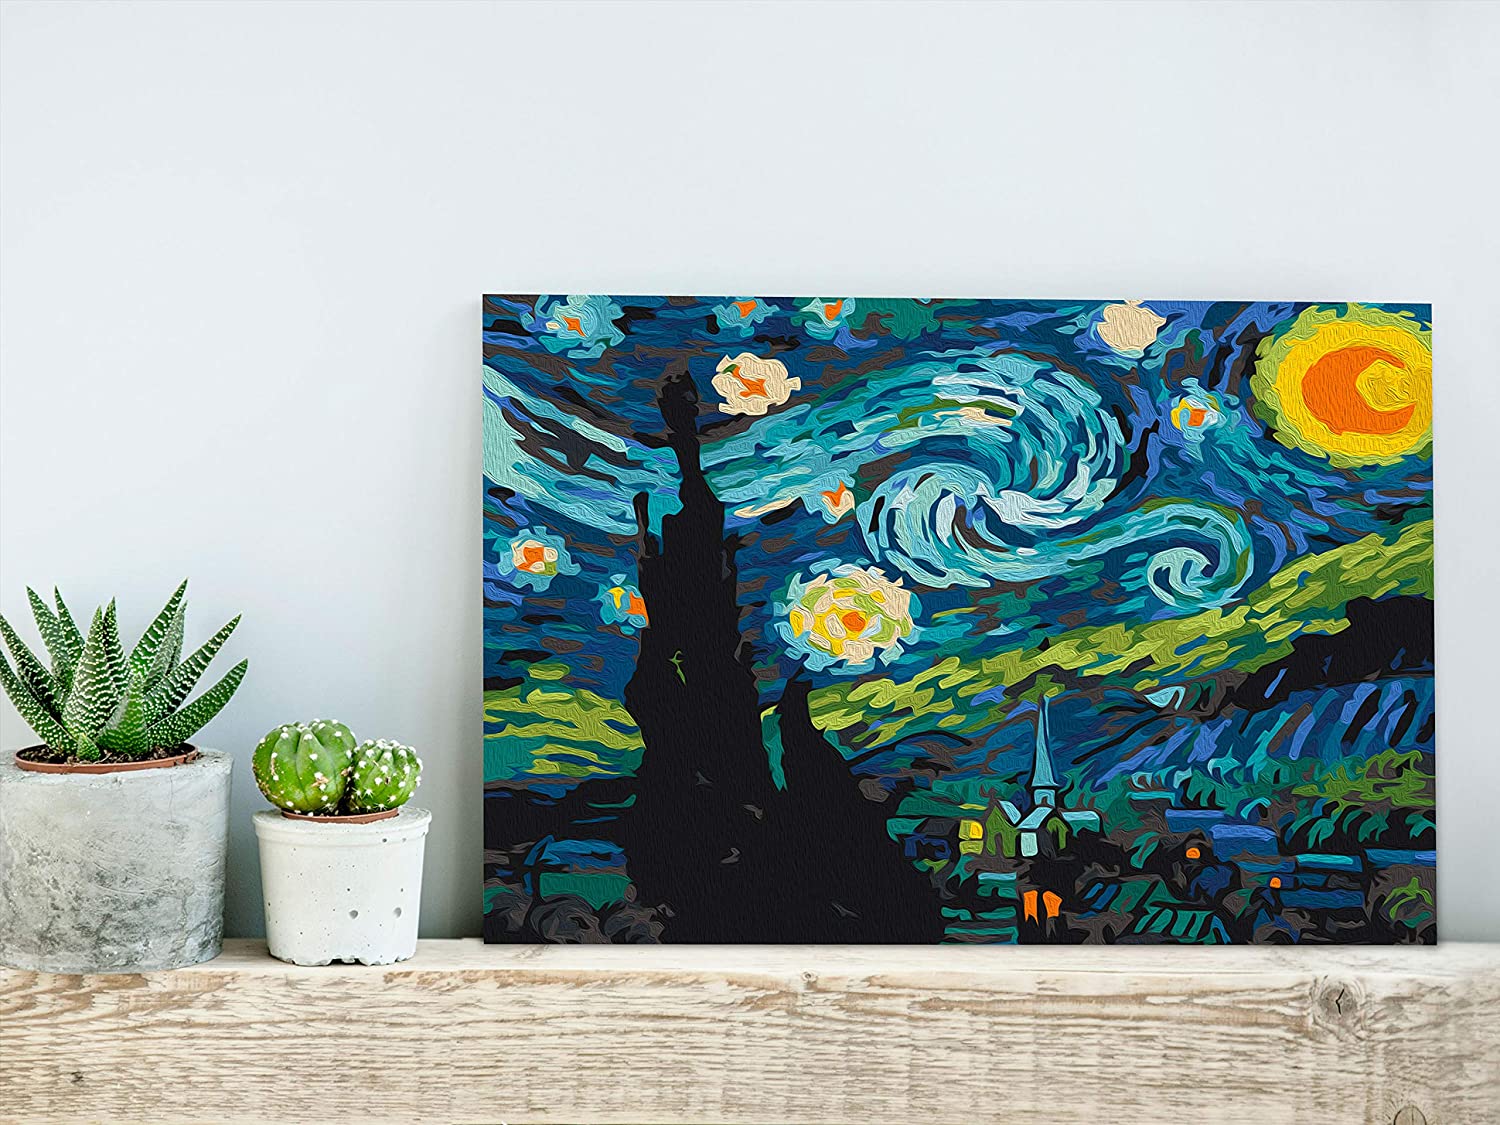 Vincent van Gogh Csillagos Éj - számfestő készlet